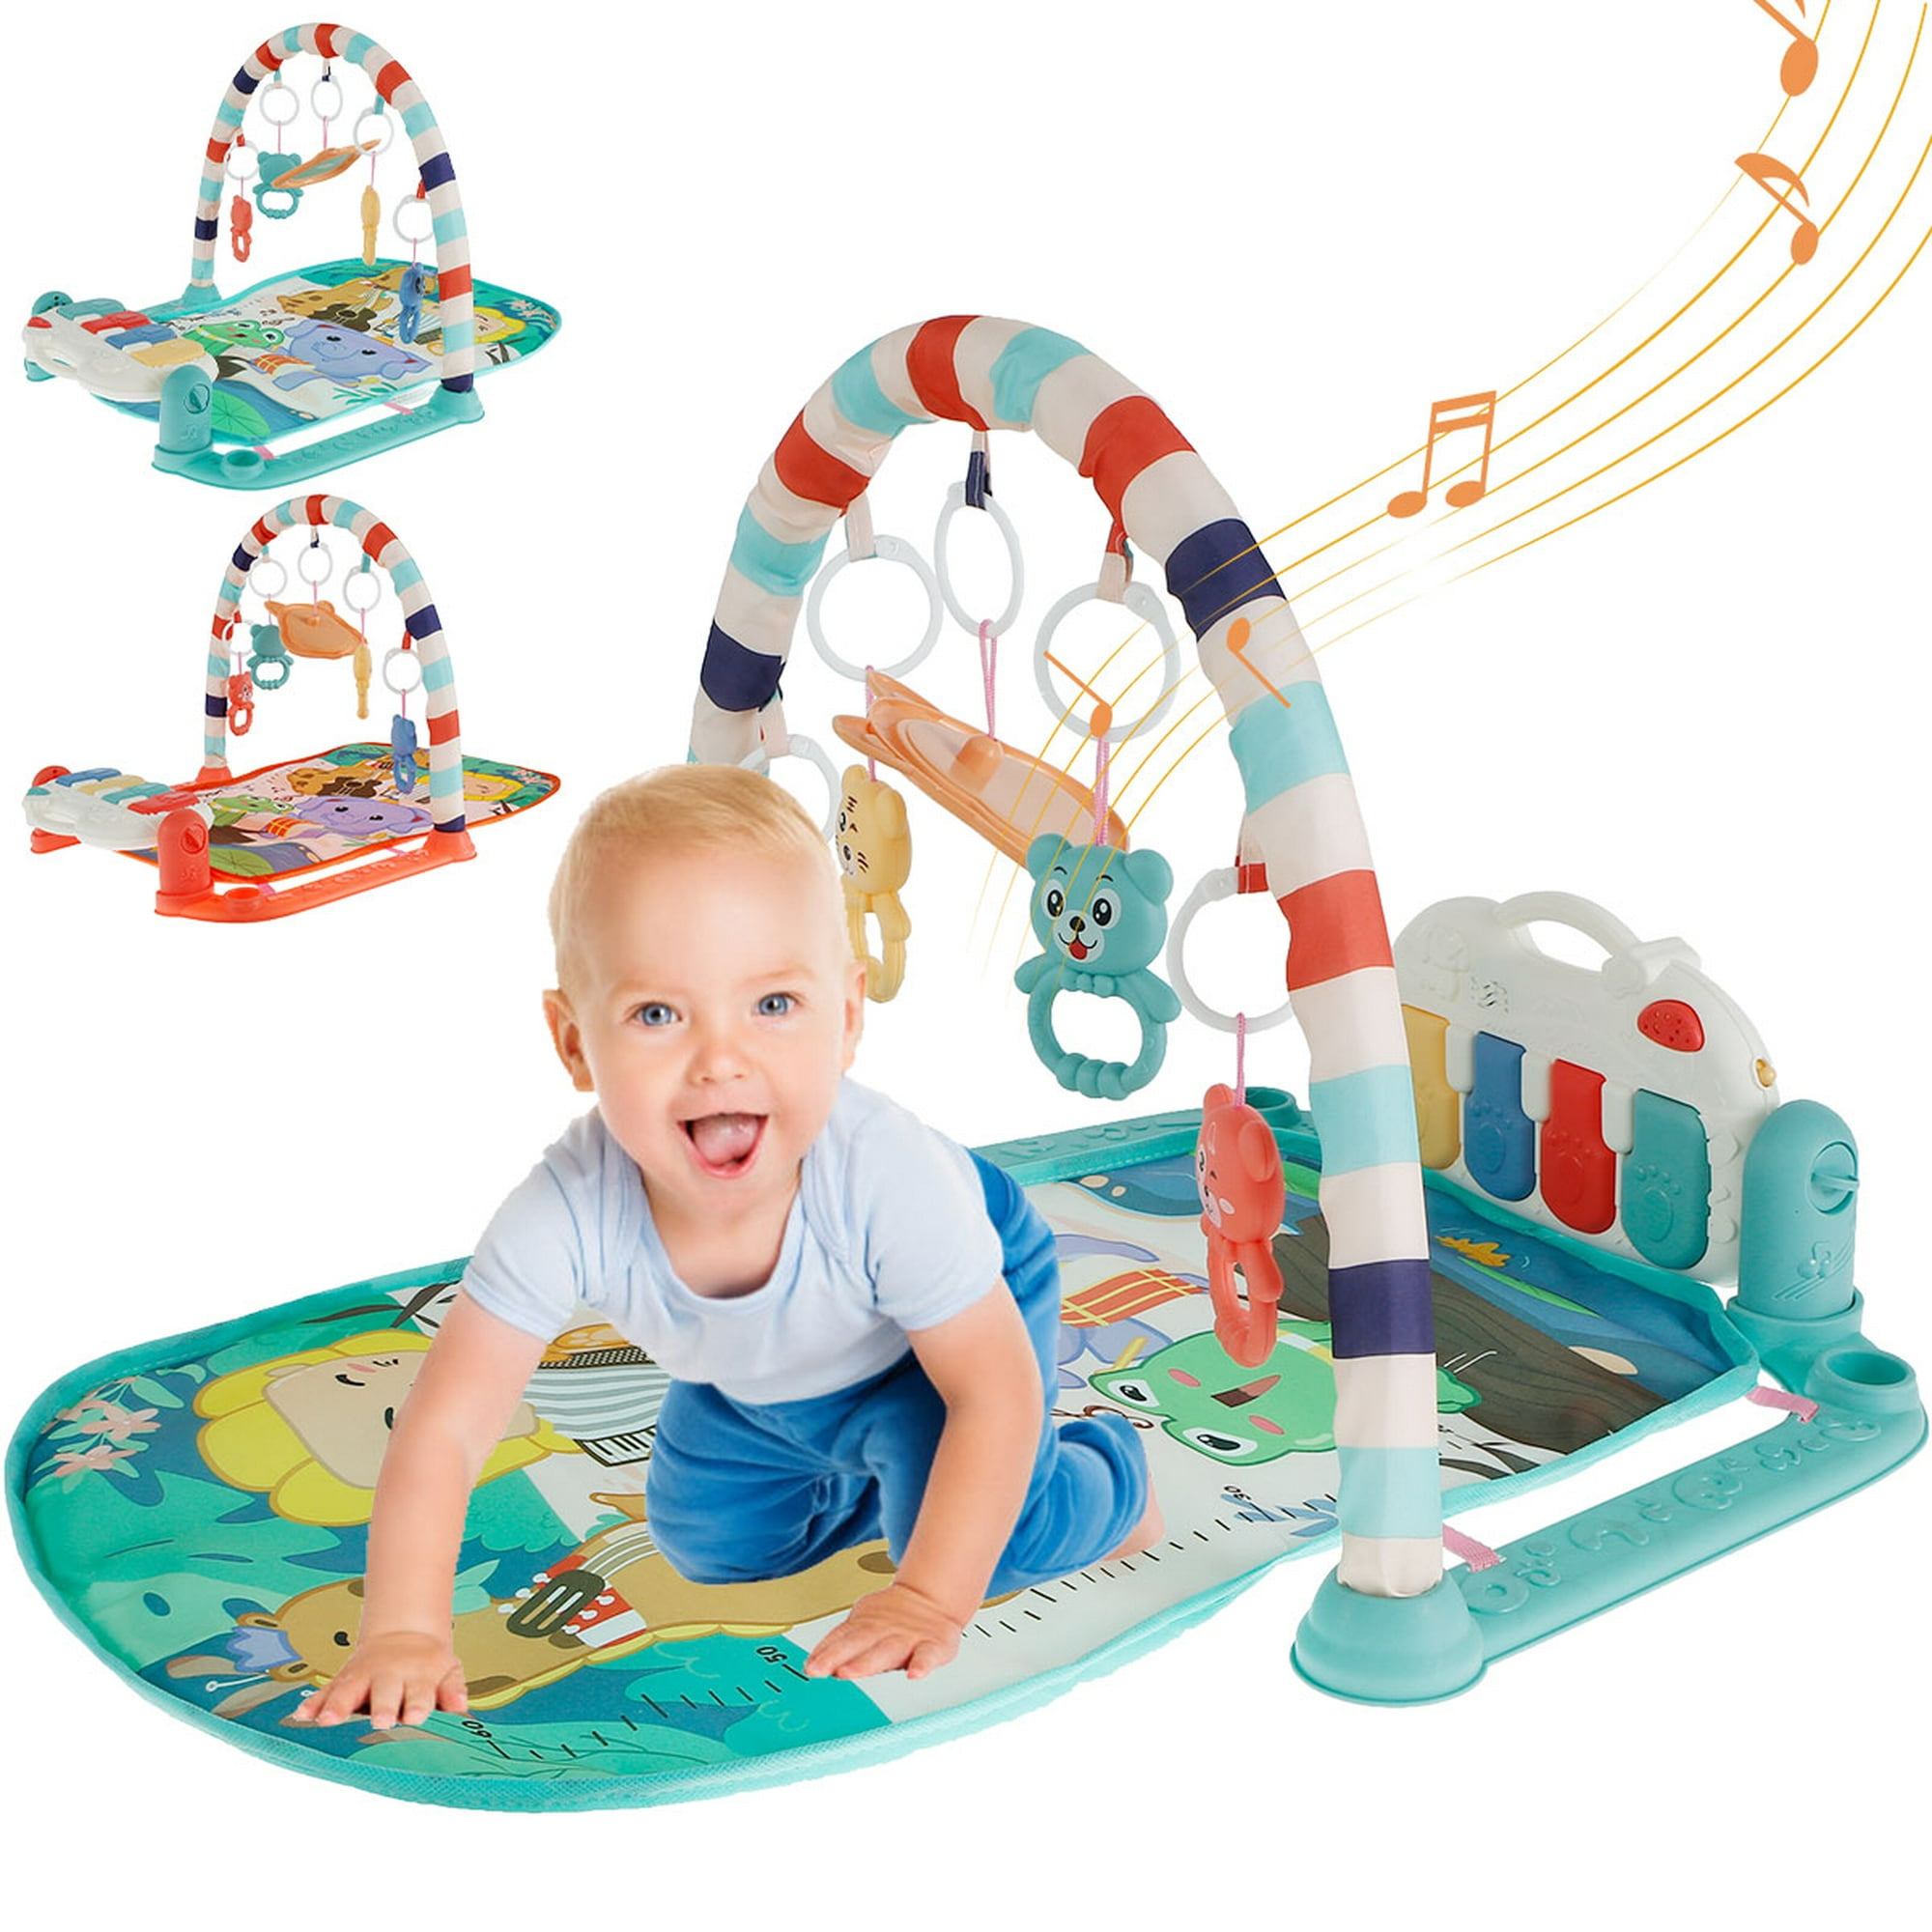 Tapete De Juegos Para Bebés Tapete De Juegos Para Bebés Tapete De Gimnasia  Para Actividades De Piano Manta Para Gatear Para Bebés Con Arco De Juego Y  Música Para Bebés Recién Nacidos